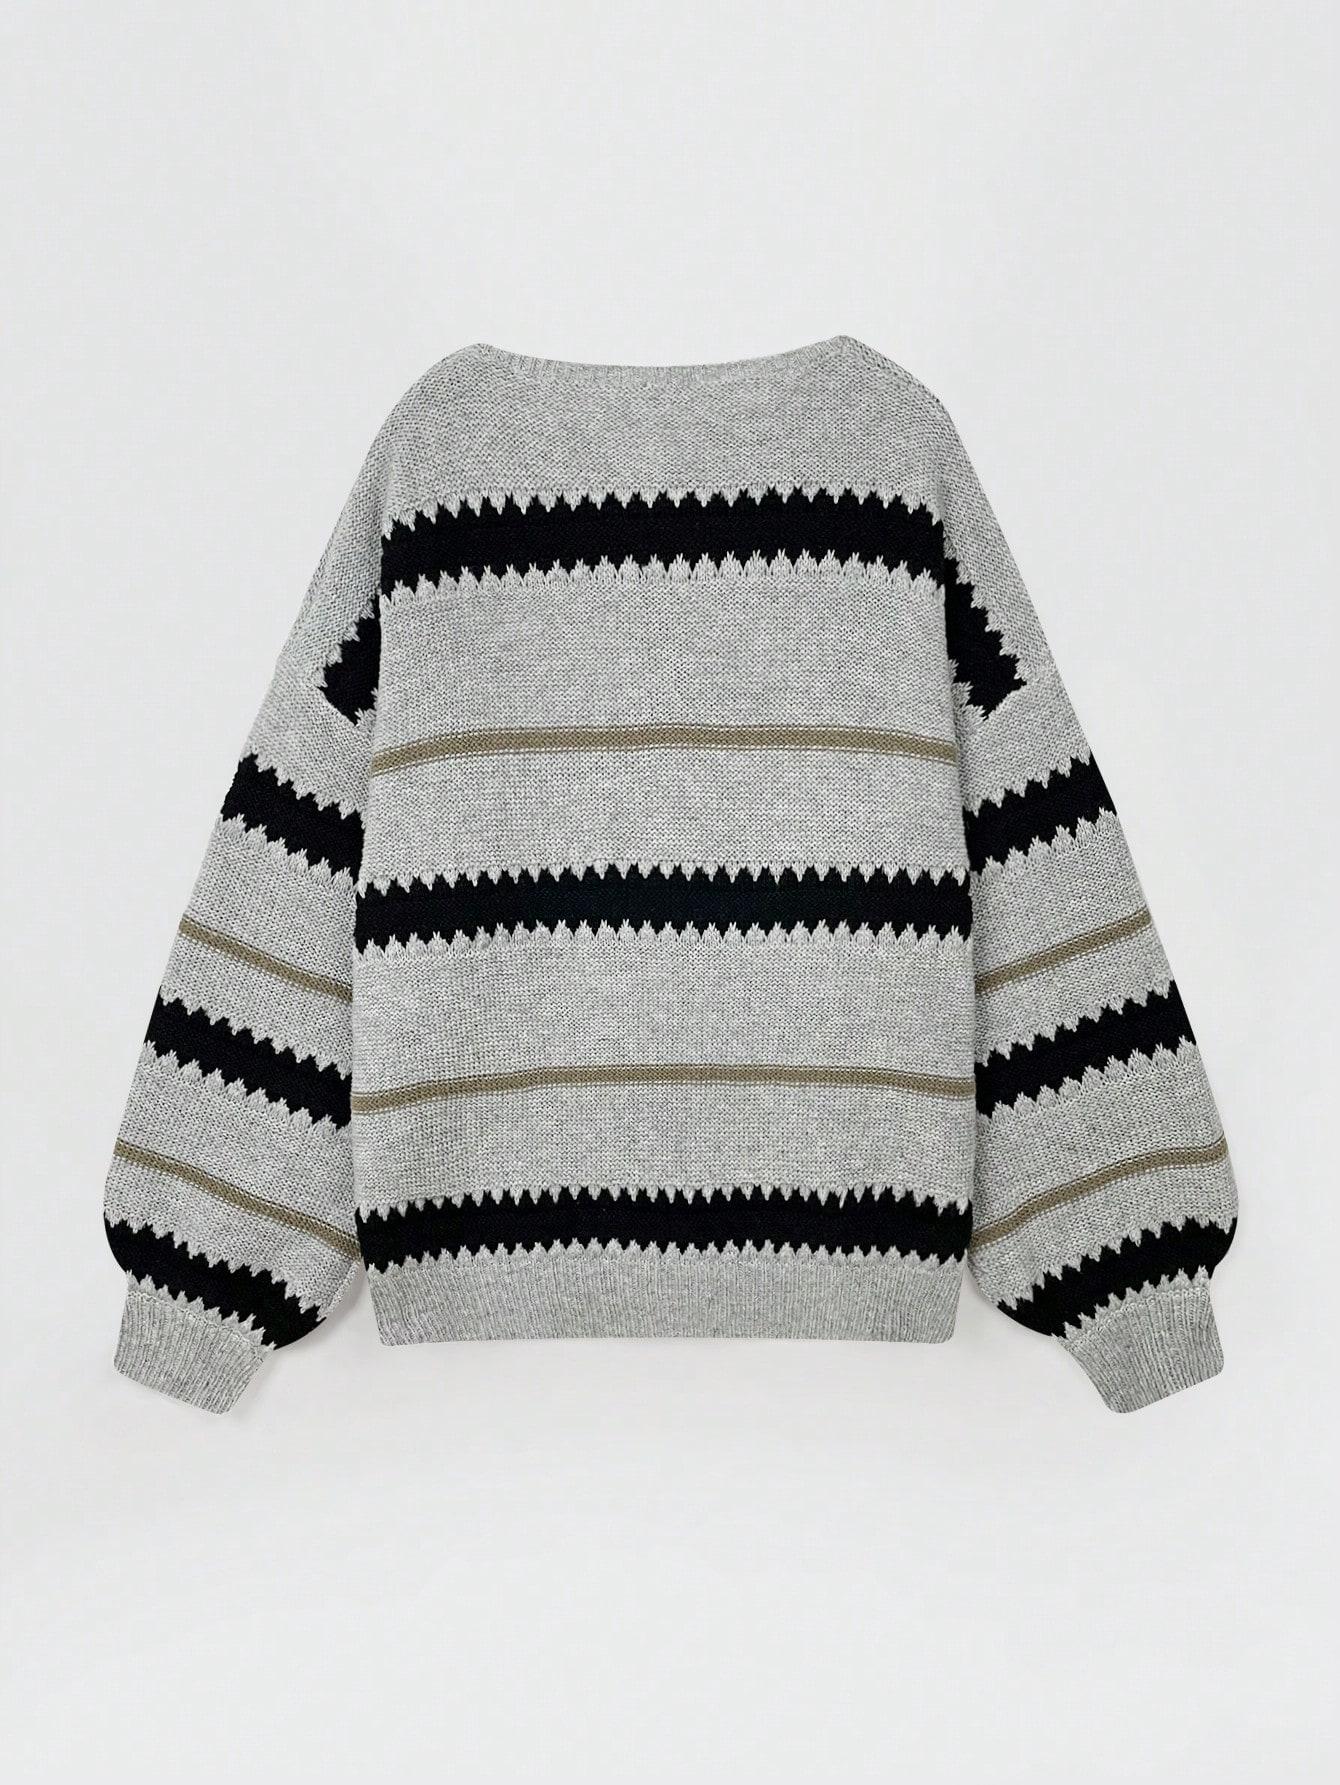 szary klasyczny sweter wzór paski